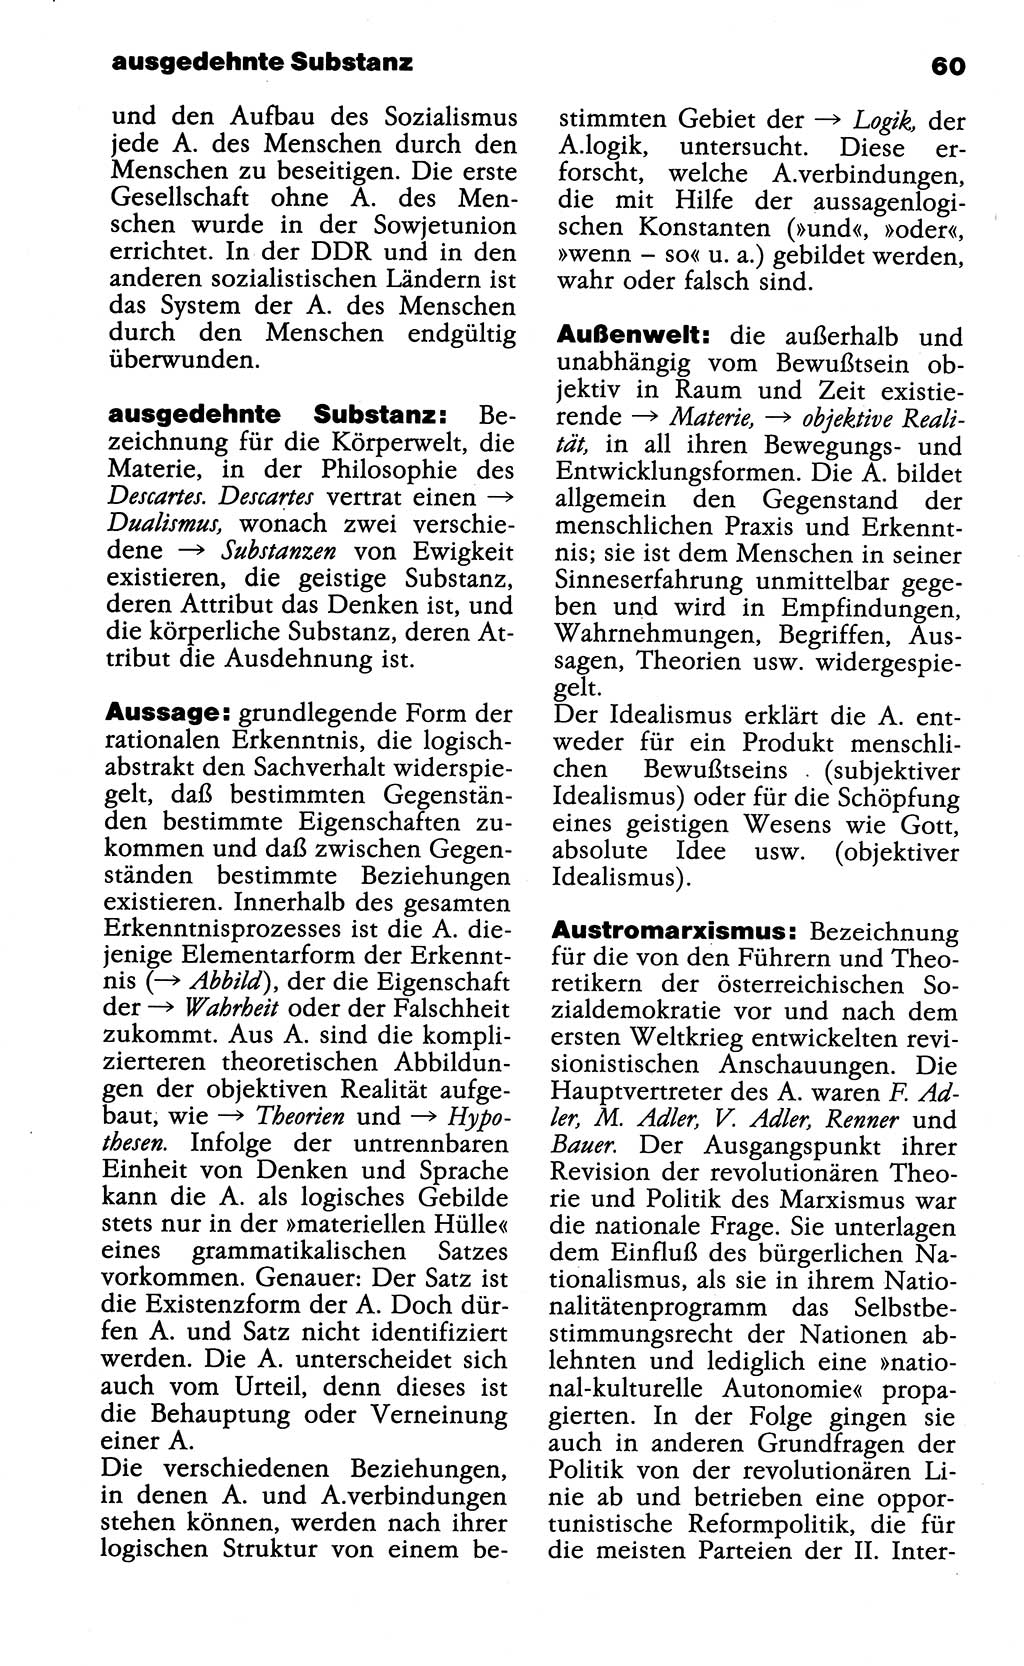 Wörterbuch der marxistisch-leninistischen Philosophie [Deutsche Demokratische Republik (DDR)] 1985, Seite 60 (Wb. ML Phil. DDR 1985, S. 60)